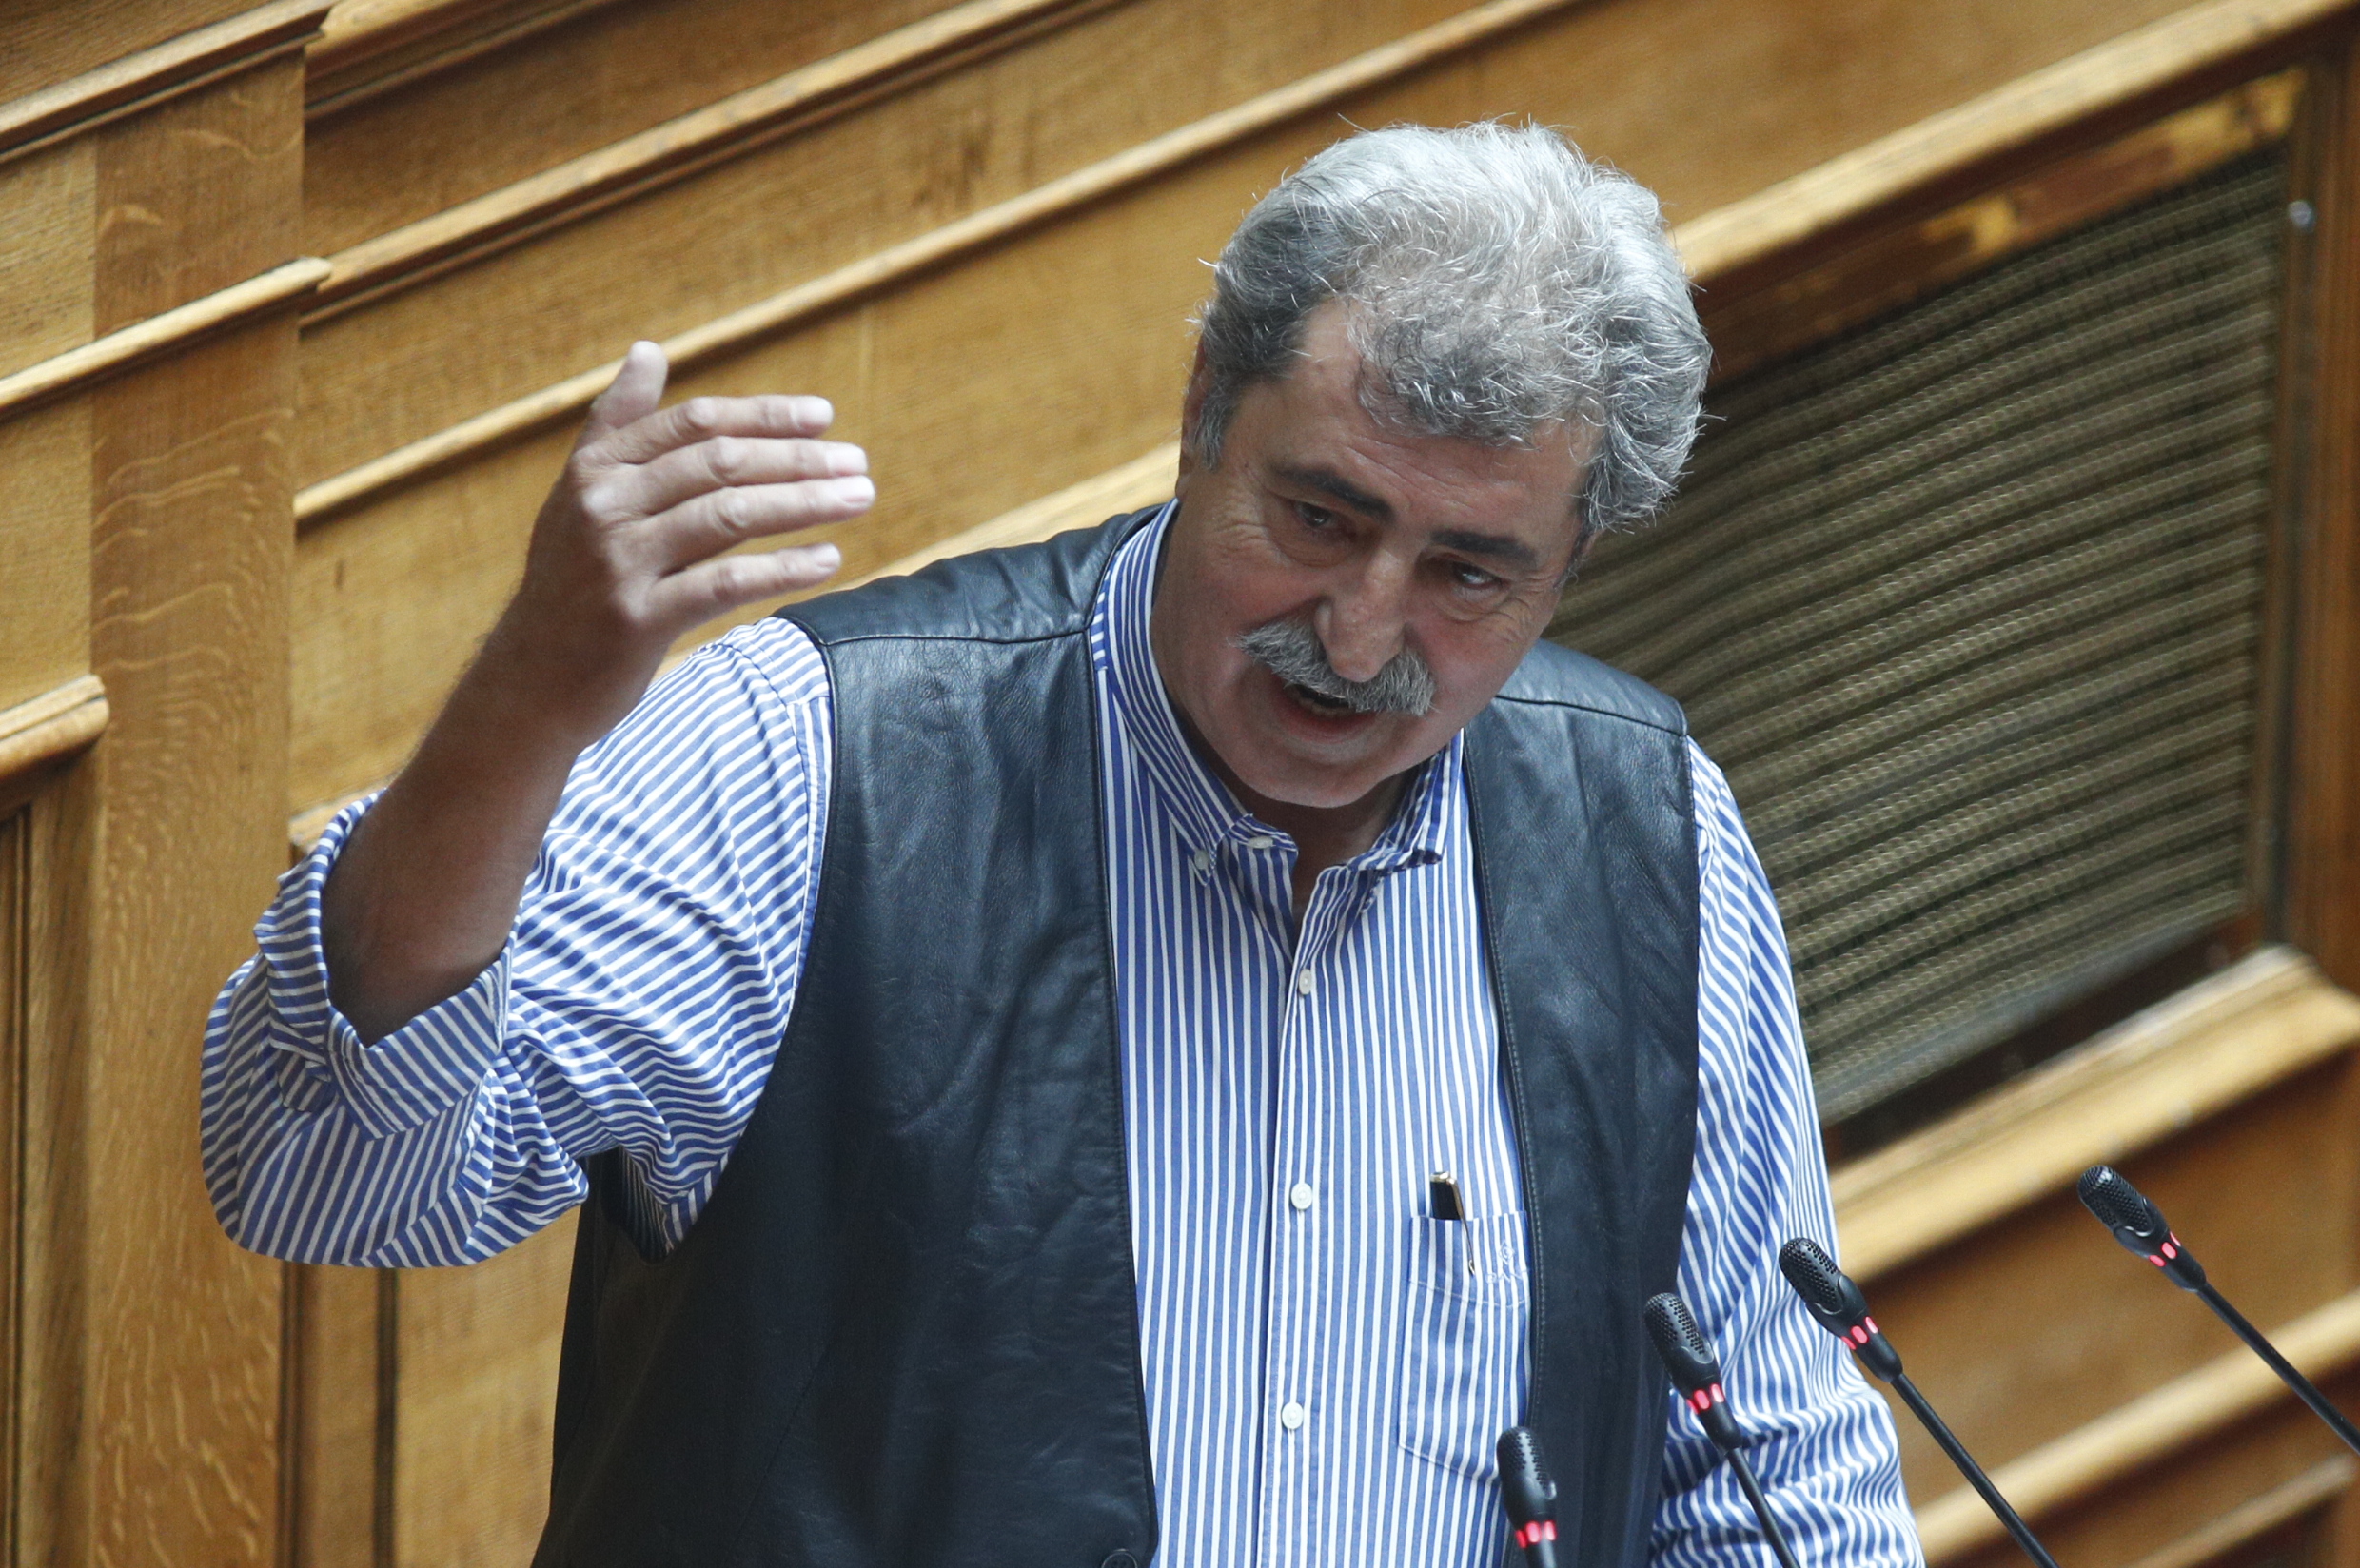 Ο Παύλος Πολάκης δηλώνει ΣΥΡΙΖΑ, αφήνει αιχμές κατά της Λινού και παραπέμπει σε ξεκαθάρισμα στο συνέδριο